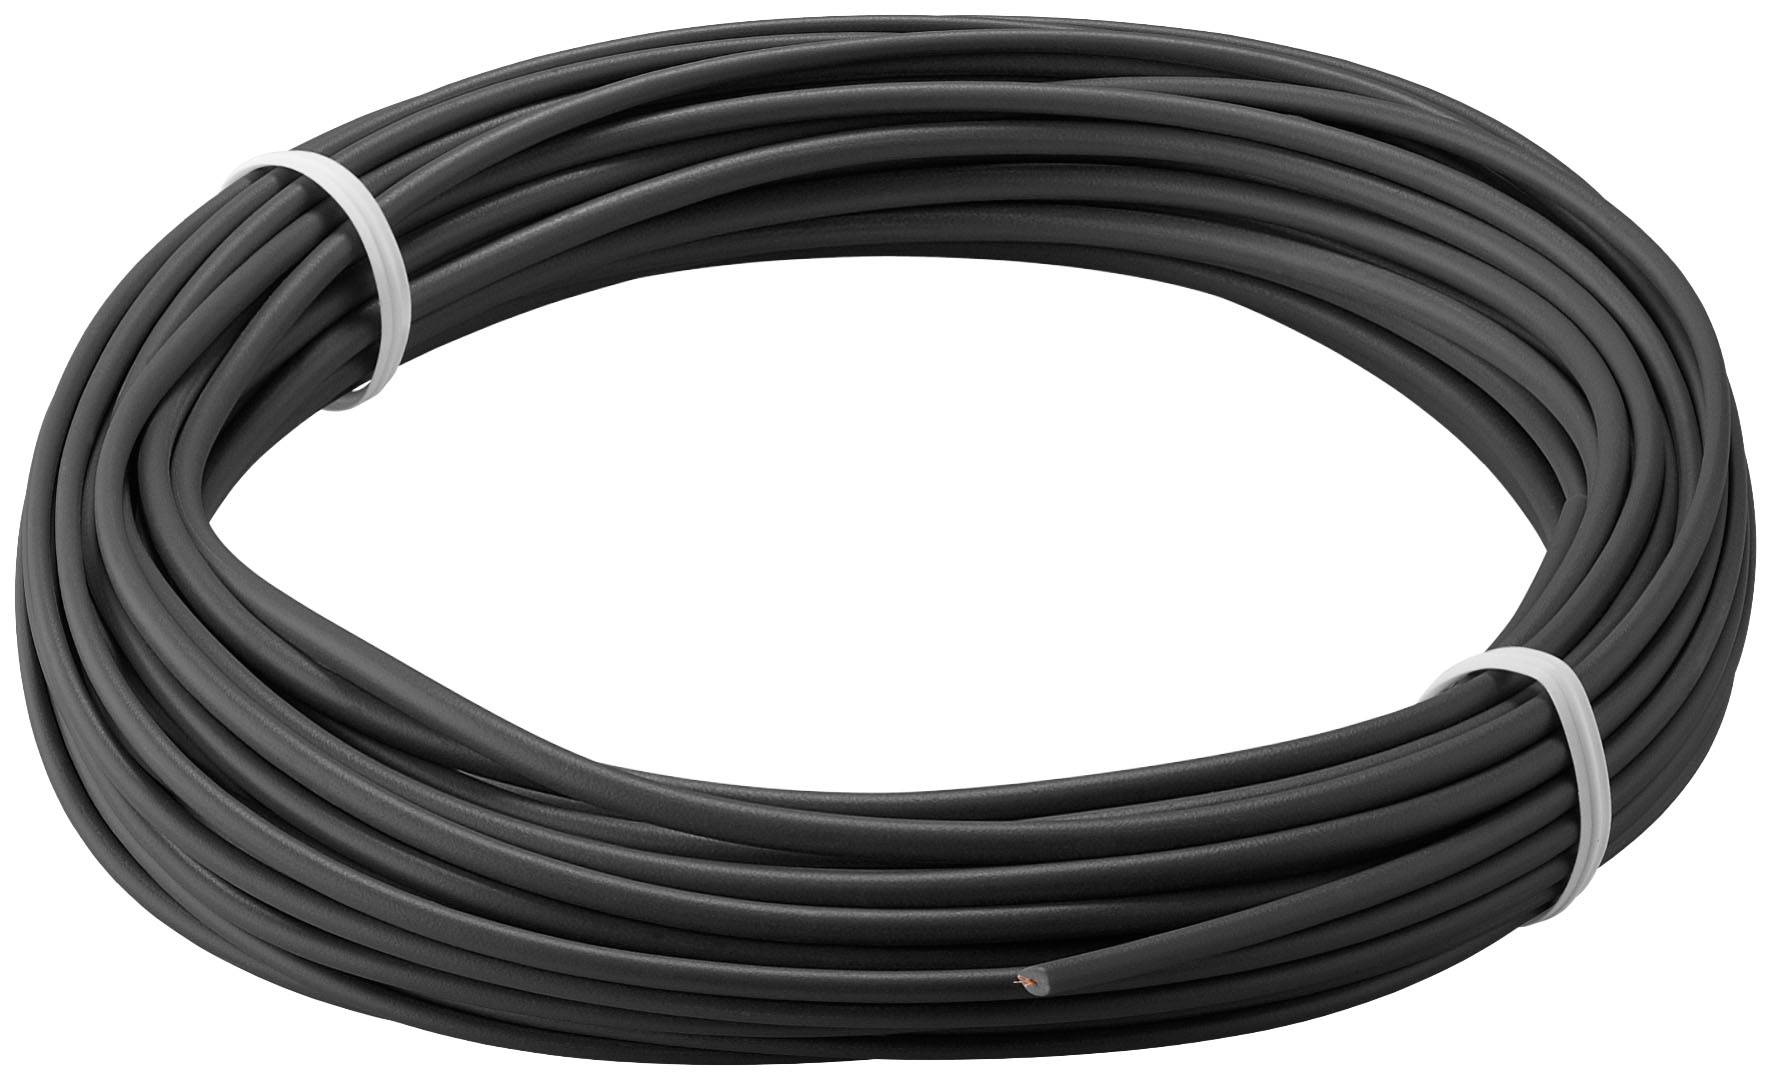 E44-Câble réseau ftp, connecteur rj45. cat 5e (100 mbps), l=2m .1 x  fiche coudée 90° à 3,50 €